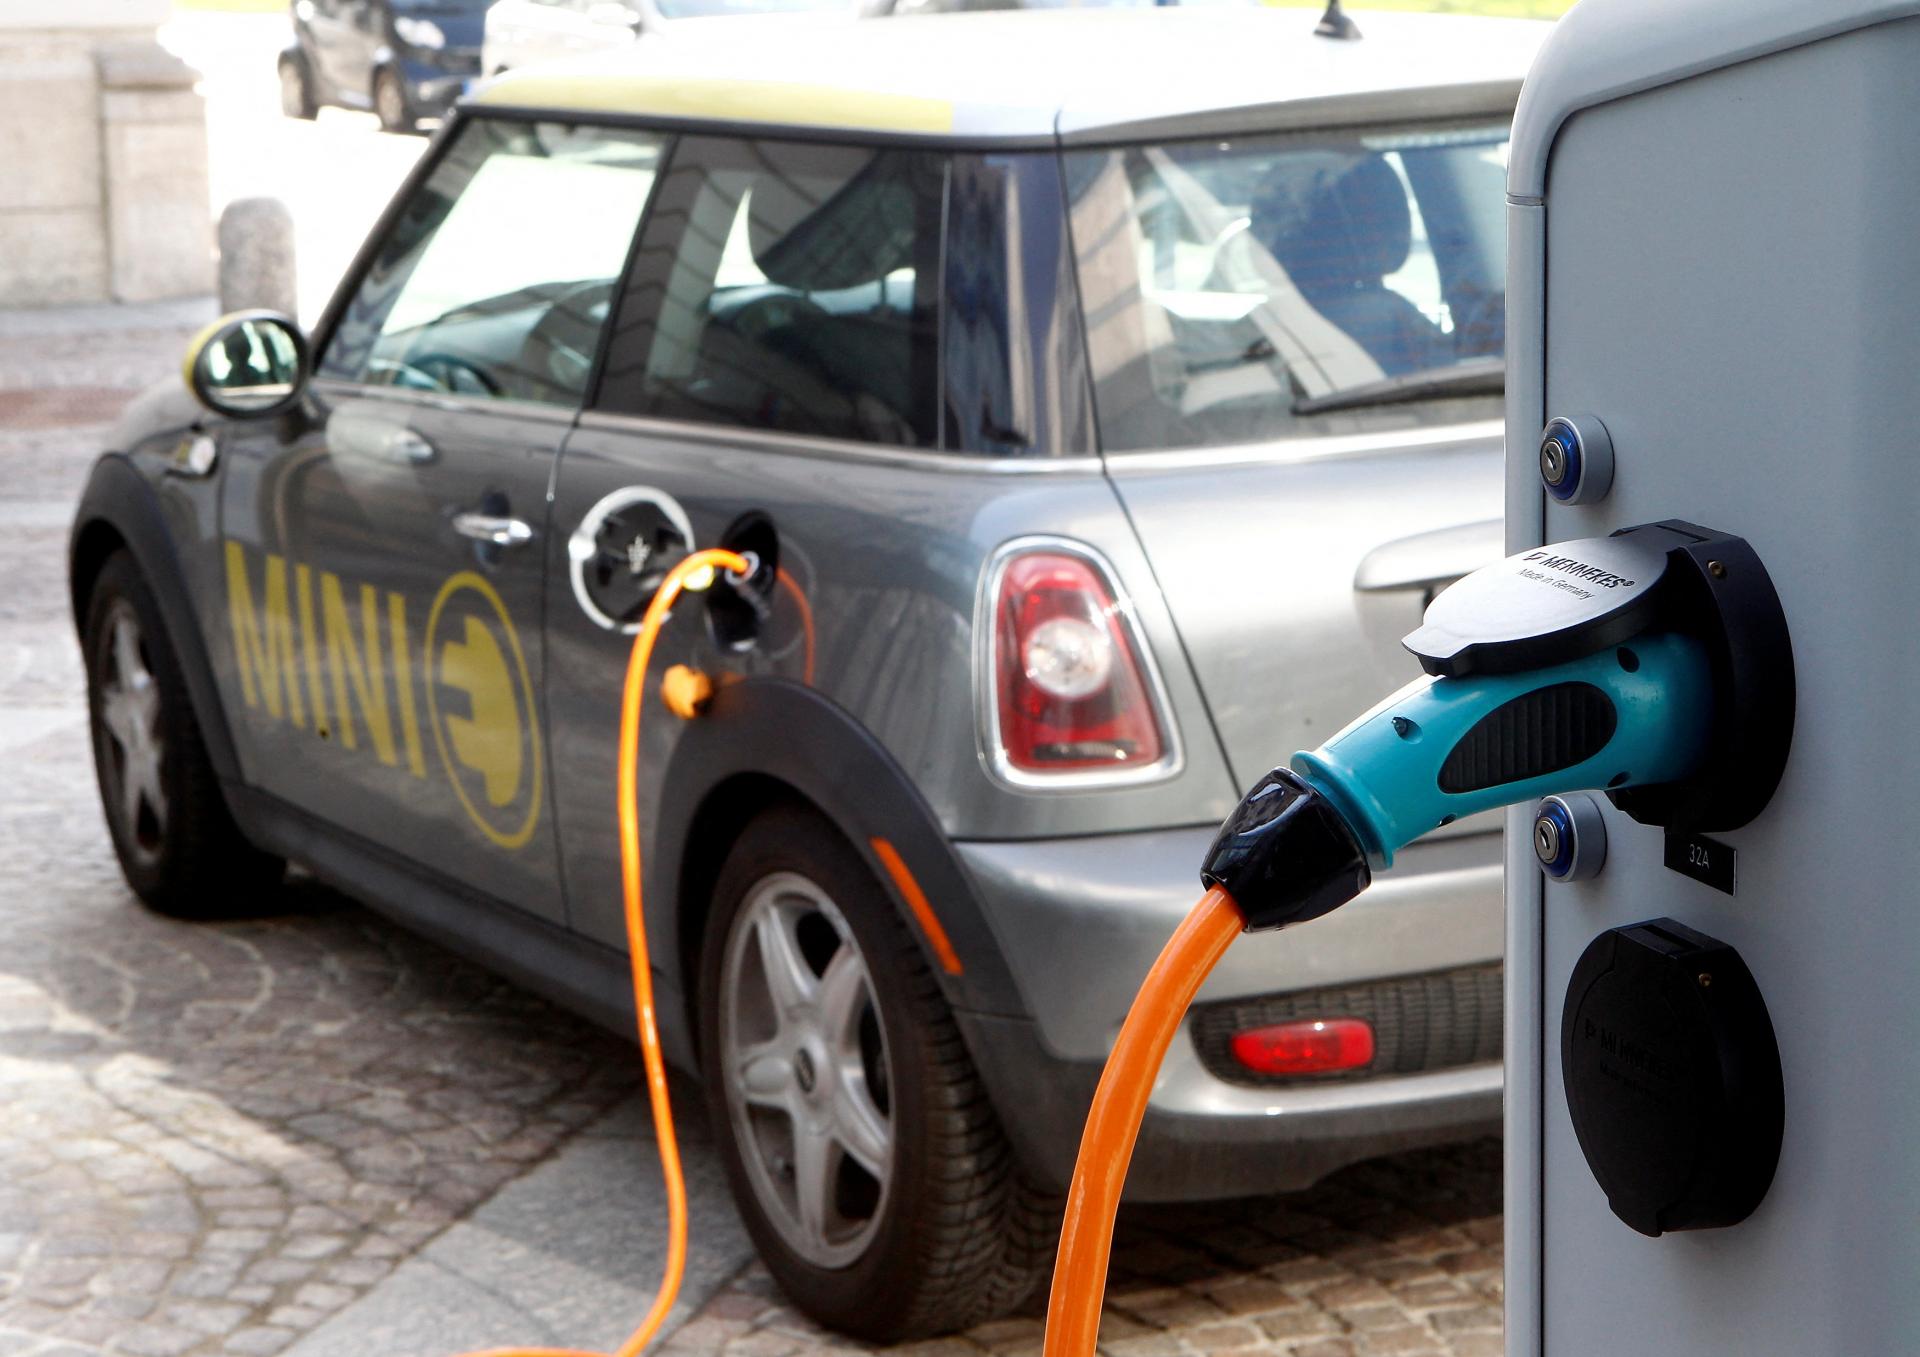 BMW žiada Brusel, aby pre jej elektrické vozidlá Mini vyrábané v Číne stanovila nižšie clá